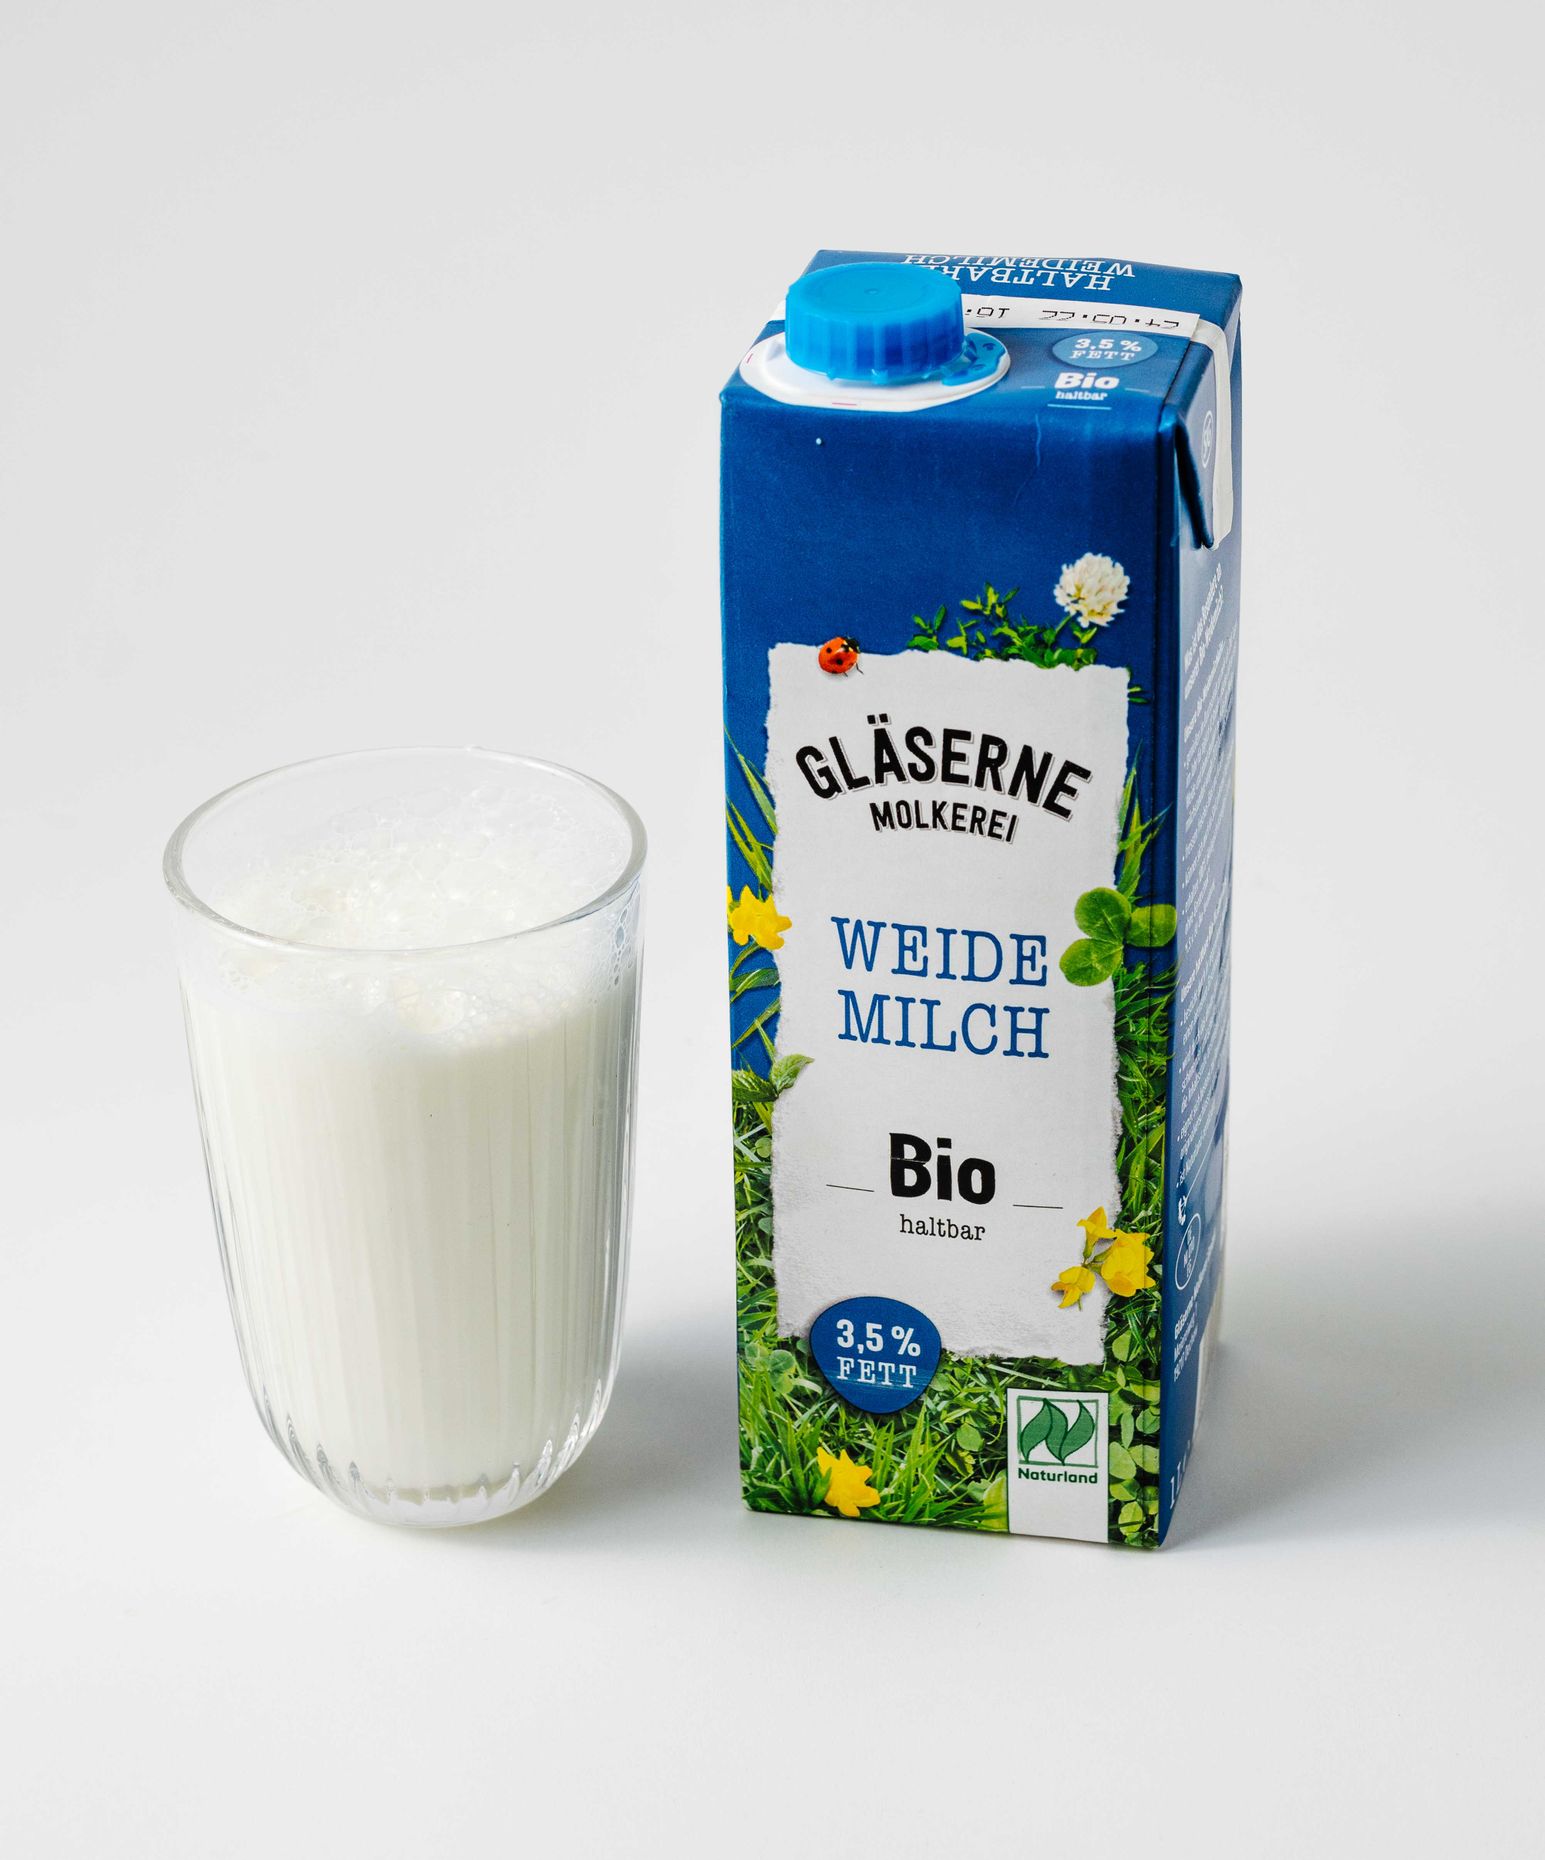 Gläserne Molkerei Bio Milk 3,5% 